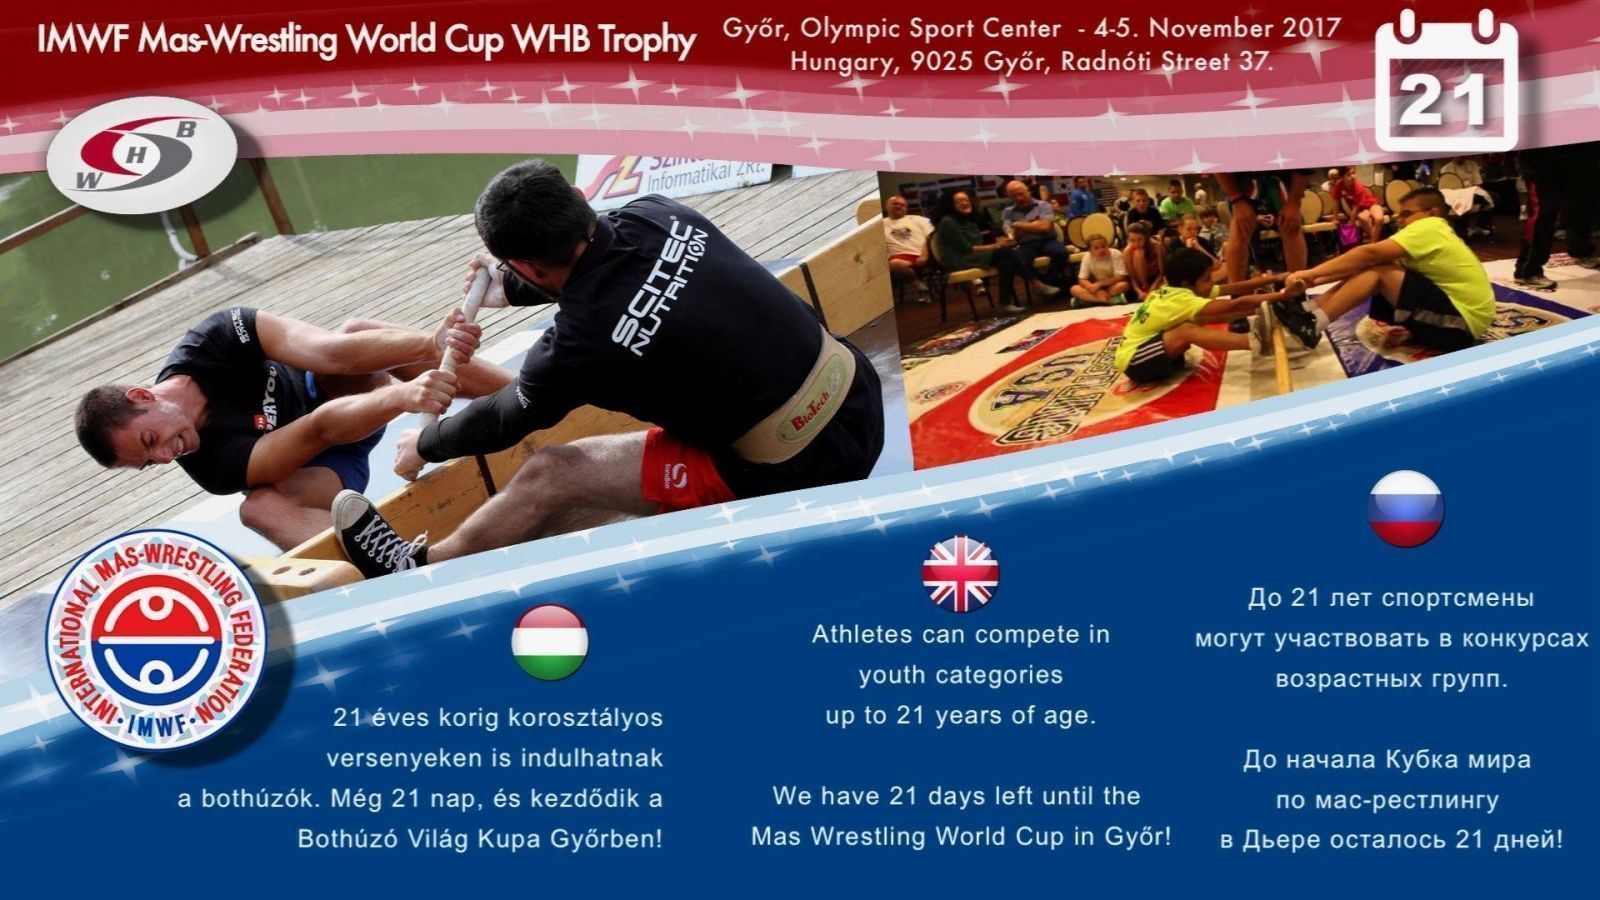 2-й этап Кубка мира по мас-рестлингу в Венгрии. Обратный отсчет. Последние новости